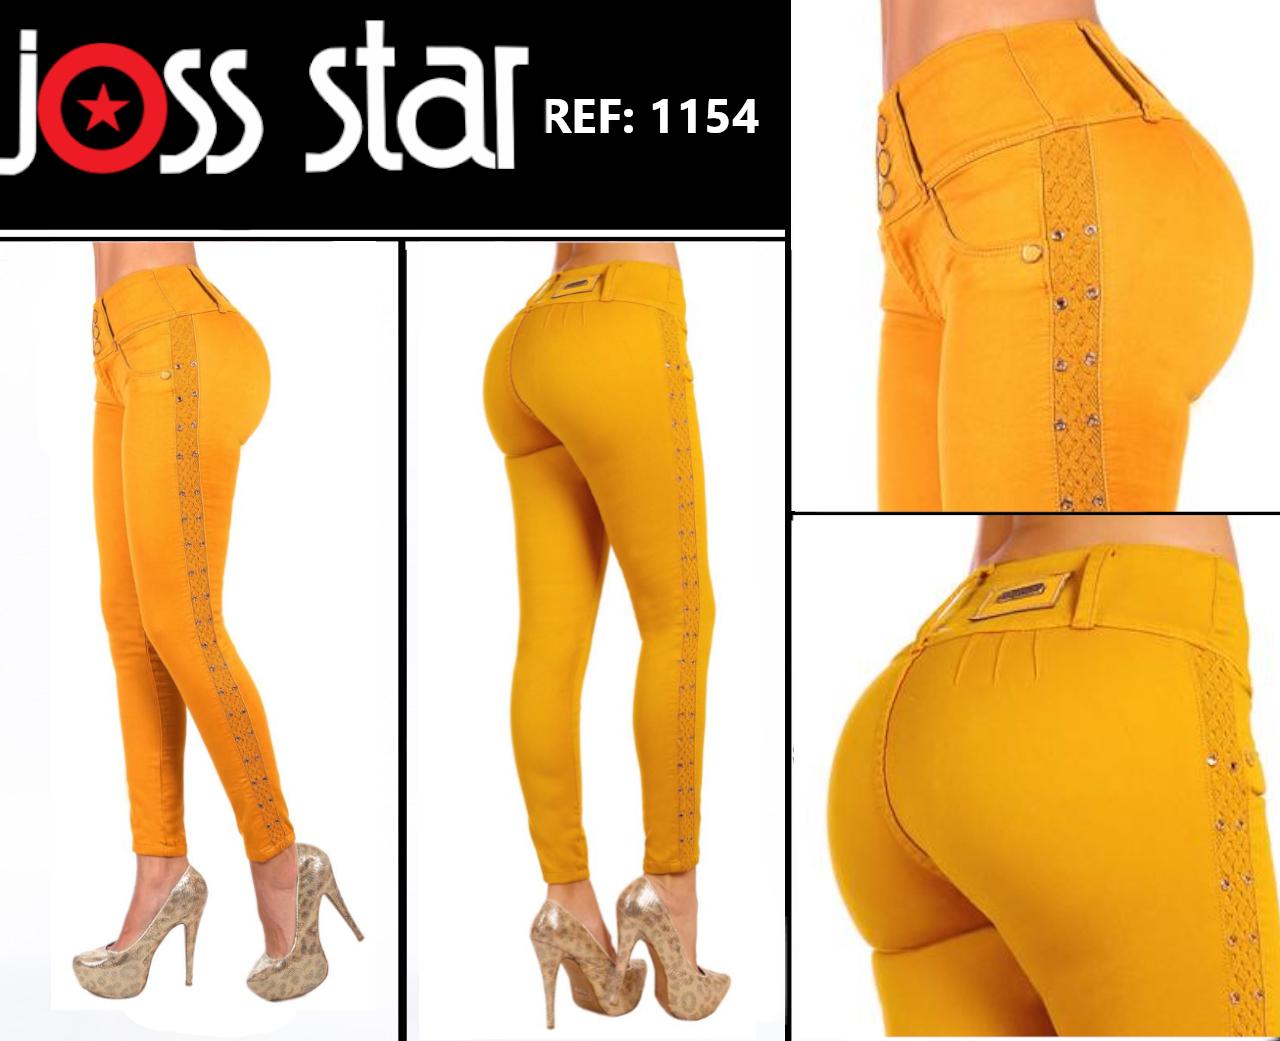 Comprar Jean De moda Boutique Colombiano Levantacola Color Mostaza marca Joss Star